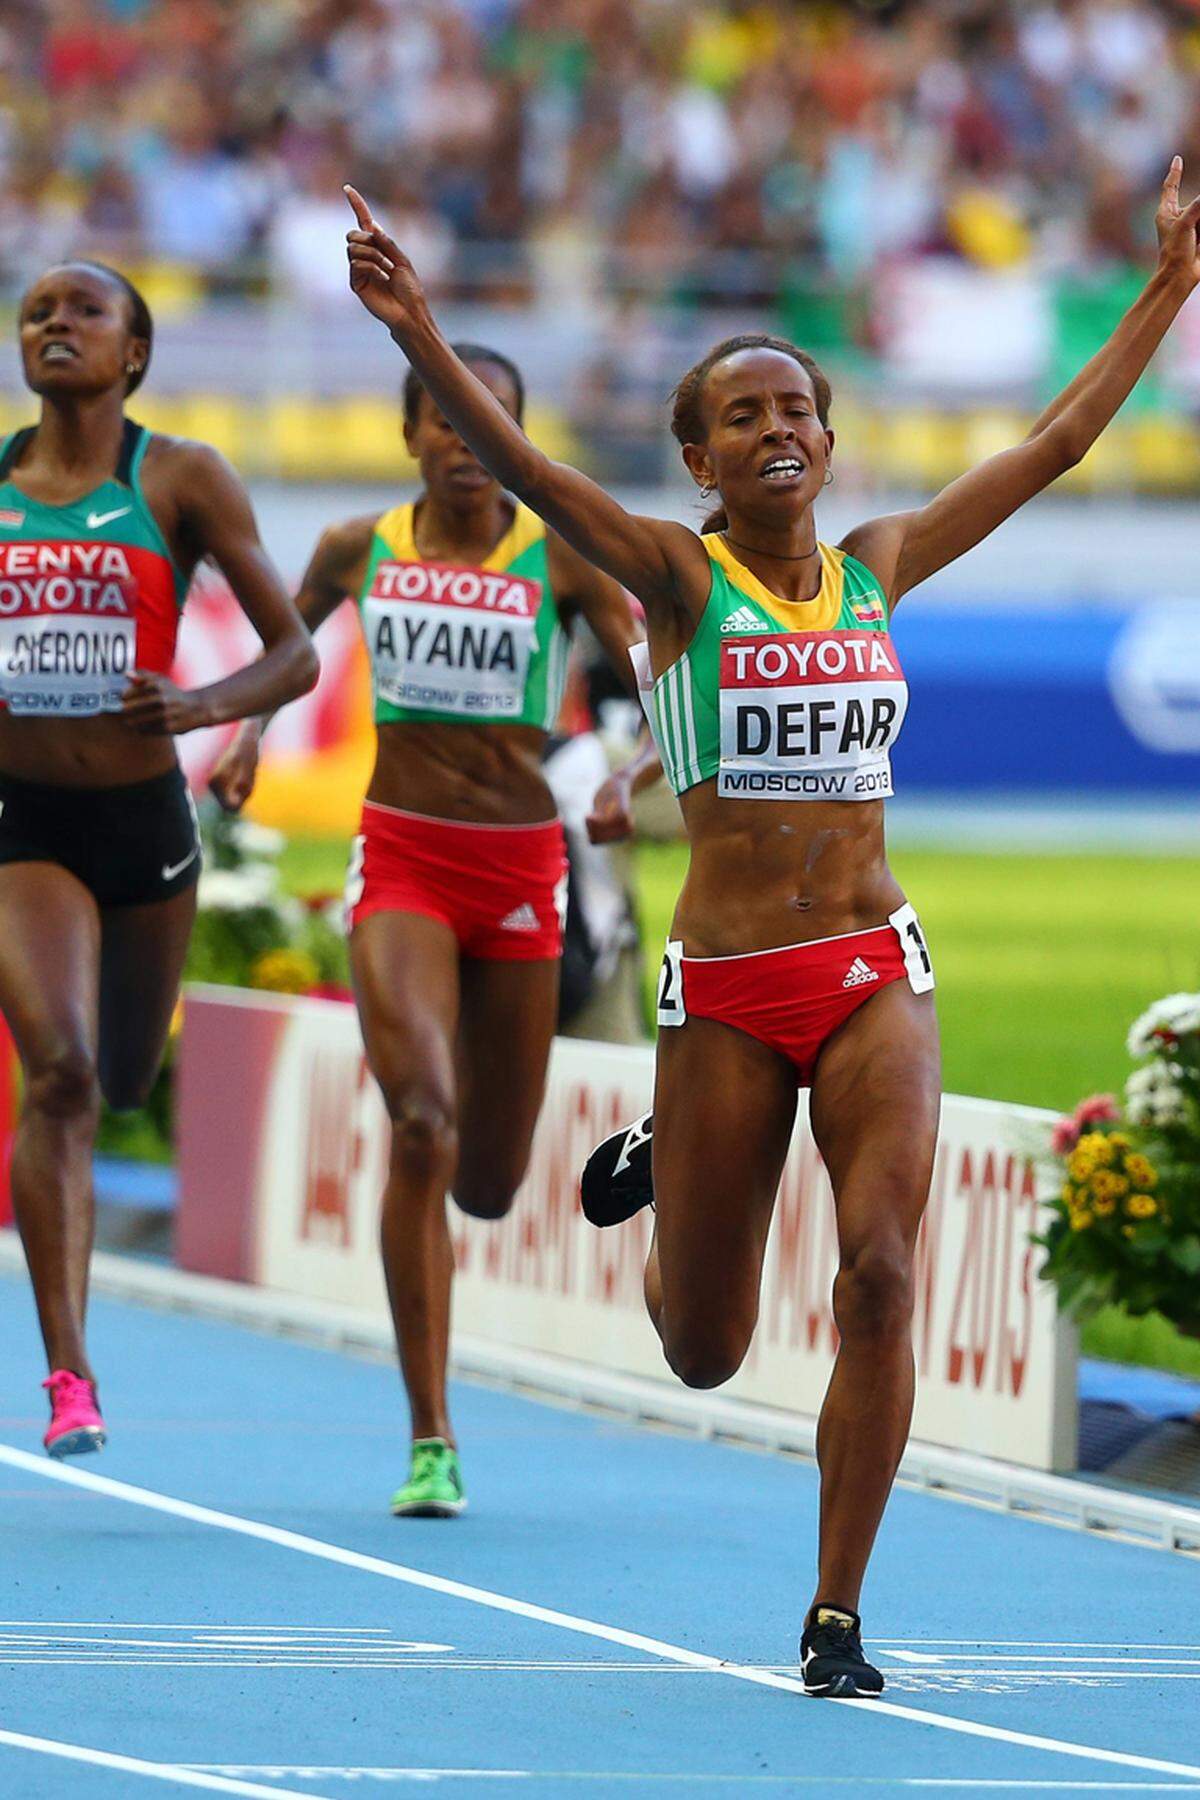 Äthiopien revanchiert sich im 5000m-Finale der Damen für die Marathonniederlage der Männer, wo Meseret Defar den Titel holt. Die Top-Favoritin entscheidet nach 14:50,19 Minuten einen spannenden Dreikampf gegen die Kenianerin Mercy Cherono und Landsfrau Almaz Ayana für sich.